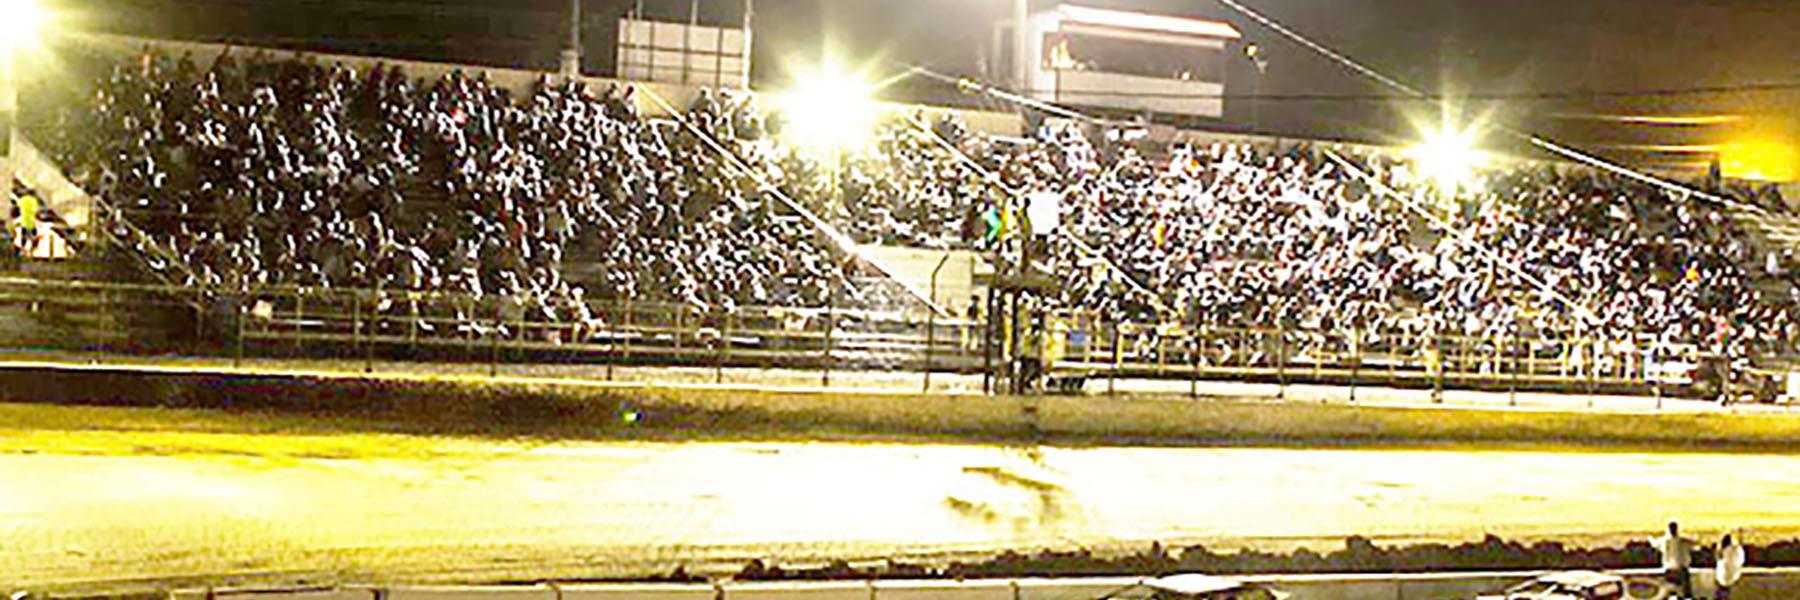 10/21/2022 - Tri-State Speedway